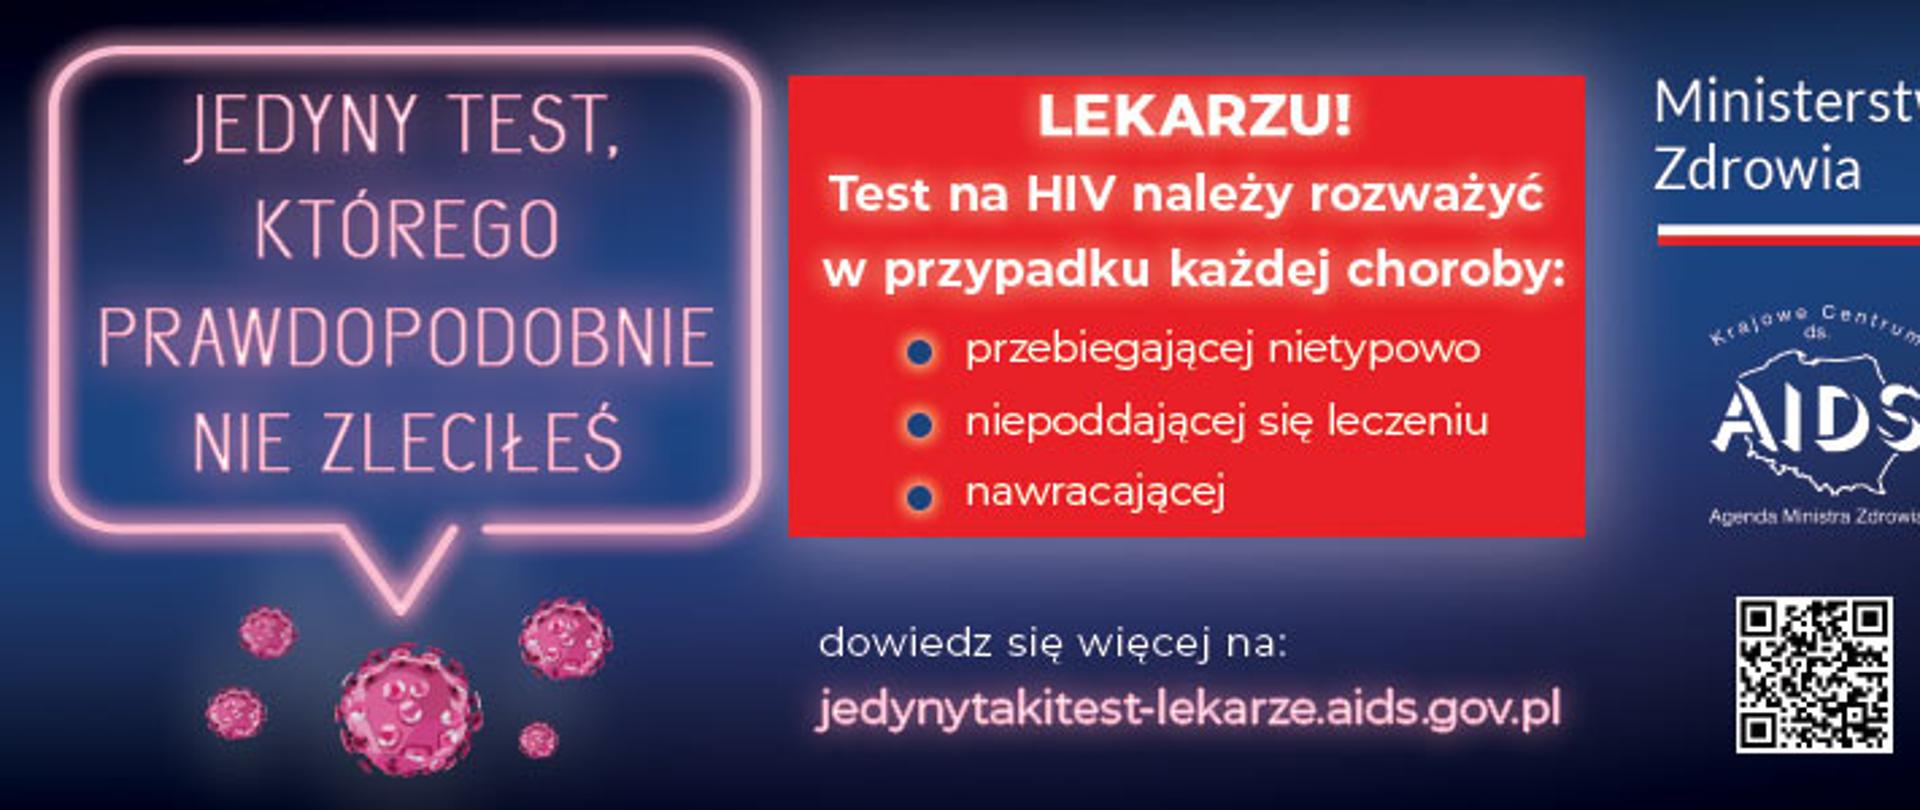 Na granatowym tle z prawej strony biały napis Ministerstwo Zdrowia, poniżej na konturze mapy Polski napis Krajowe Centrum ds. AIDS oraz kod do zeskanowania. Po środku w czerwonej ramce napis Lekarzu Test na hiv należy w przypadku każdej choroby przebiegającej nietypowo, niepoddającej się leczeniu, nawracającej. Poniżej dowiedz się więcej na: jedynytakitest-lekarze.aids.gov.pl. Z lewej strony w ramce jasnoróżowej napis jedyny taki test, którego prawdopodobnie nie zleciłeś 